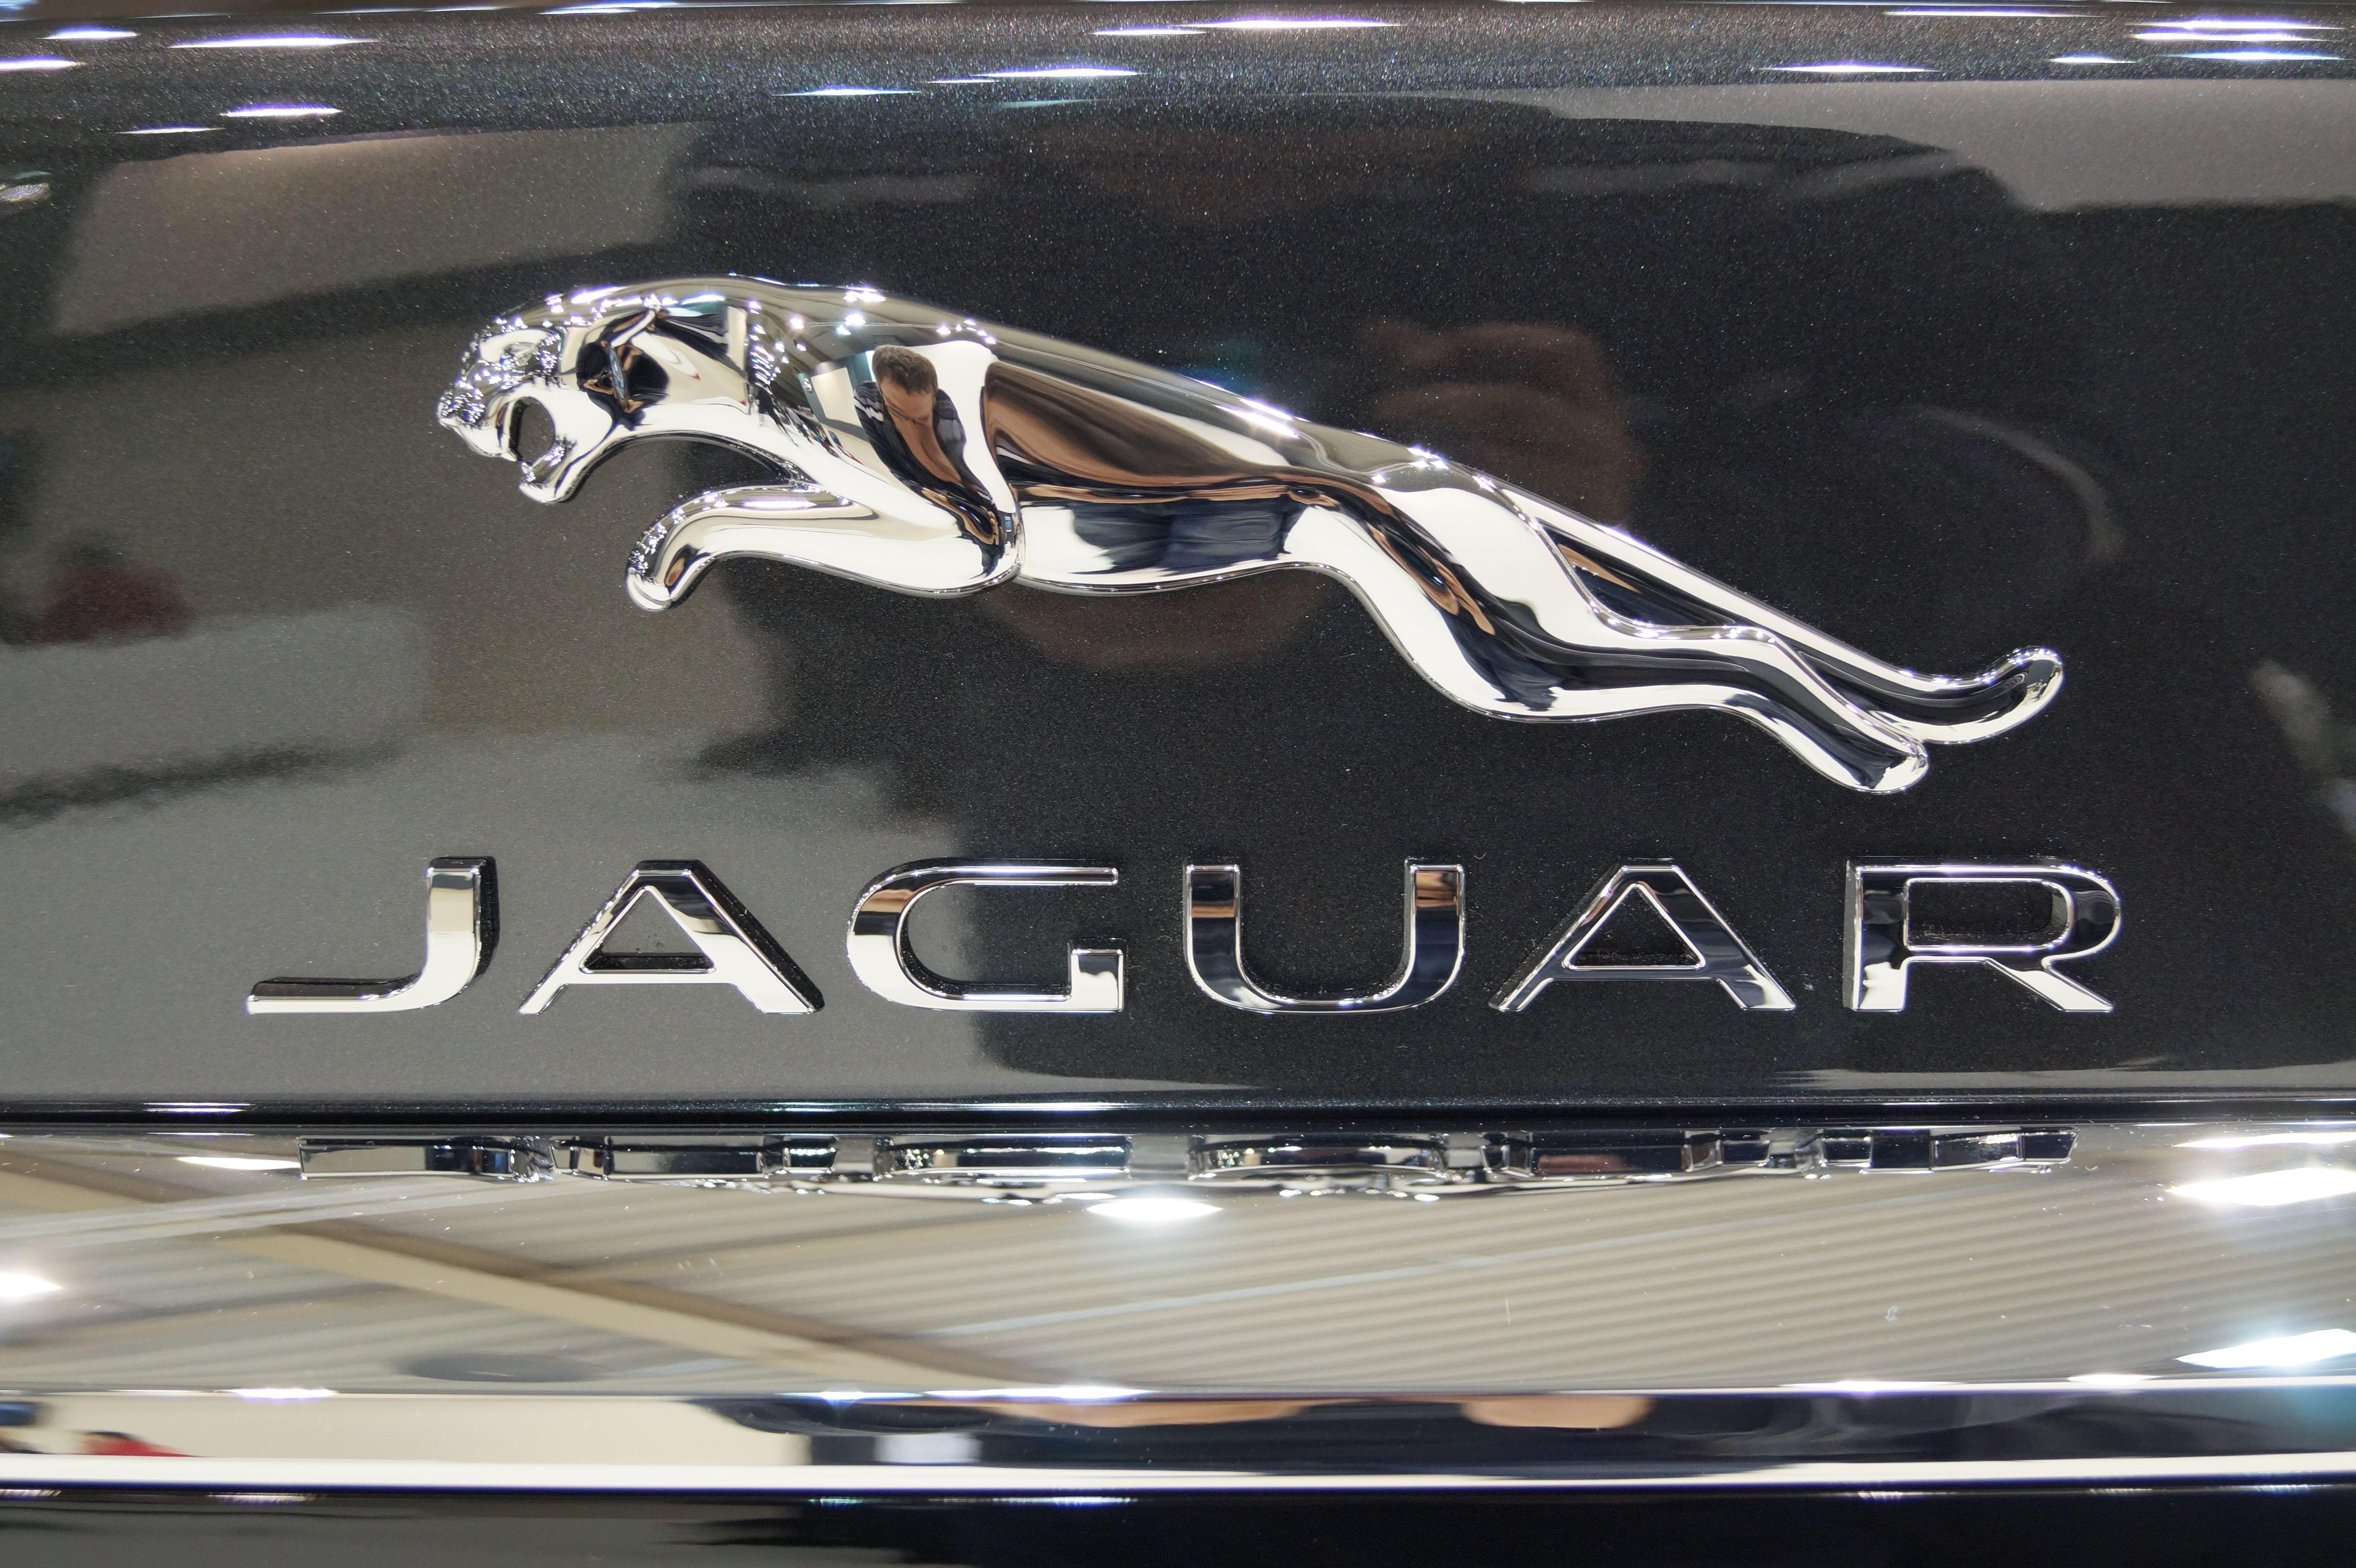 Jaguars Original Logo - File:Jaguar - logo (MSP15).JPG - Wikimedia Commons